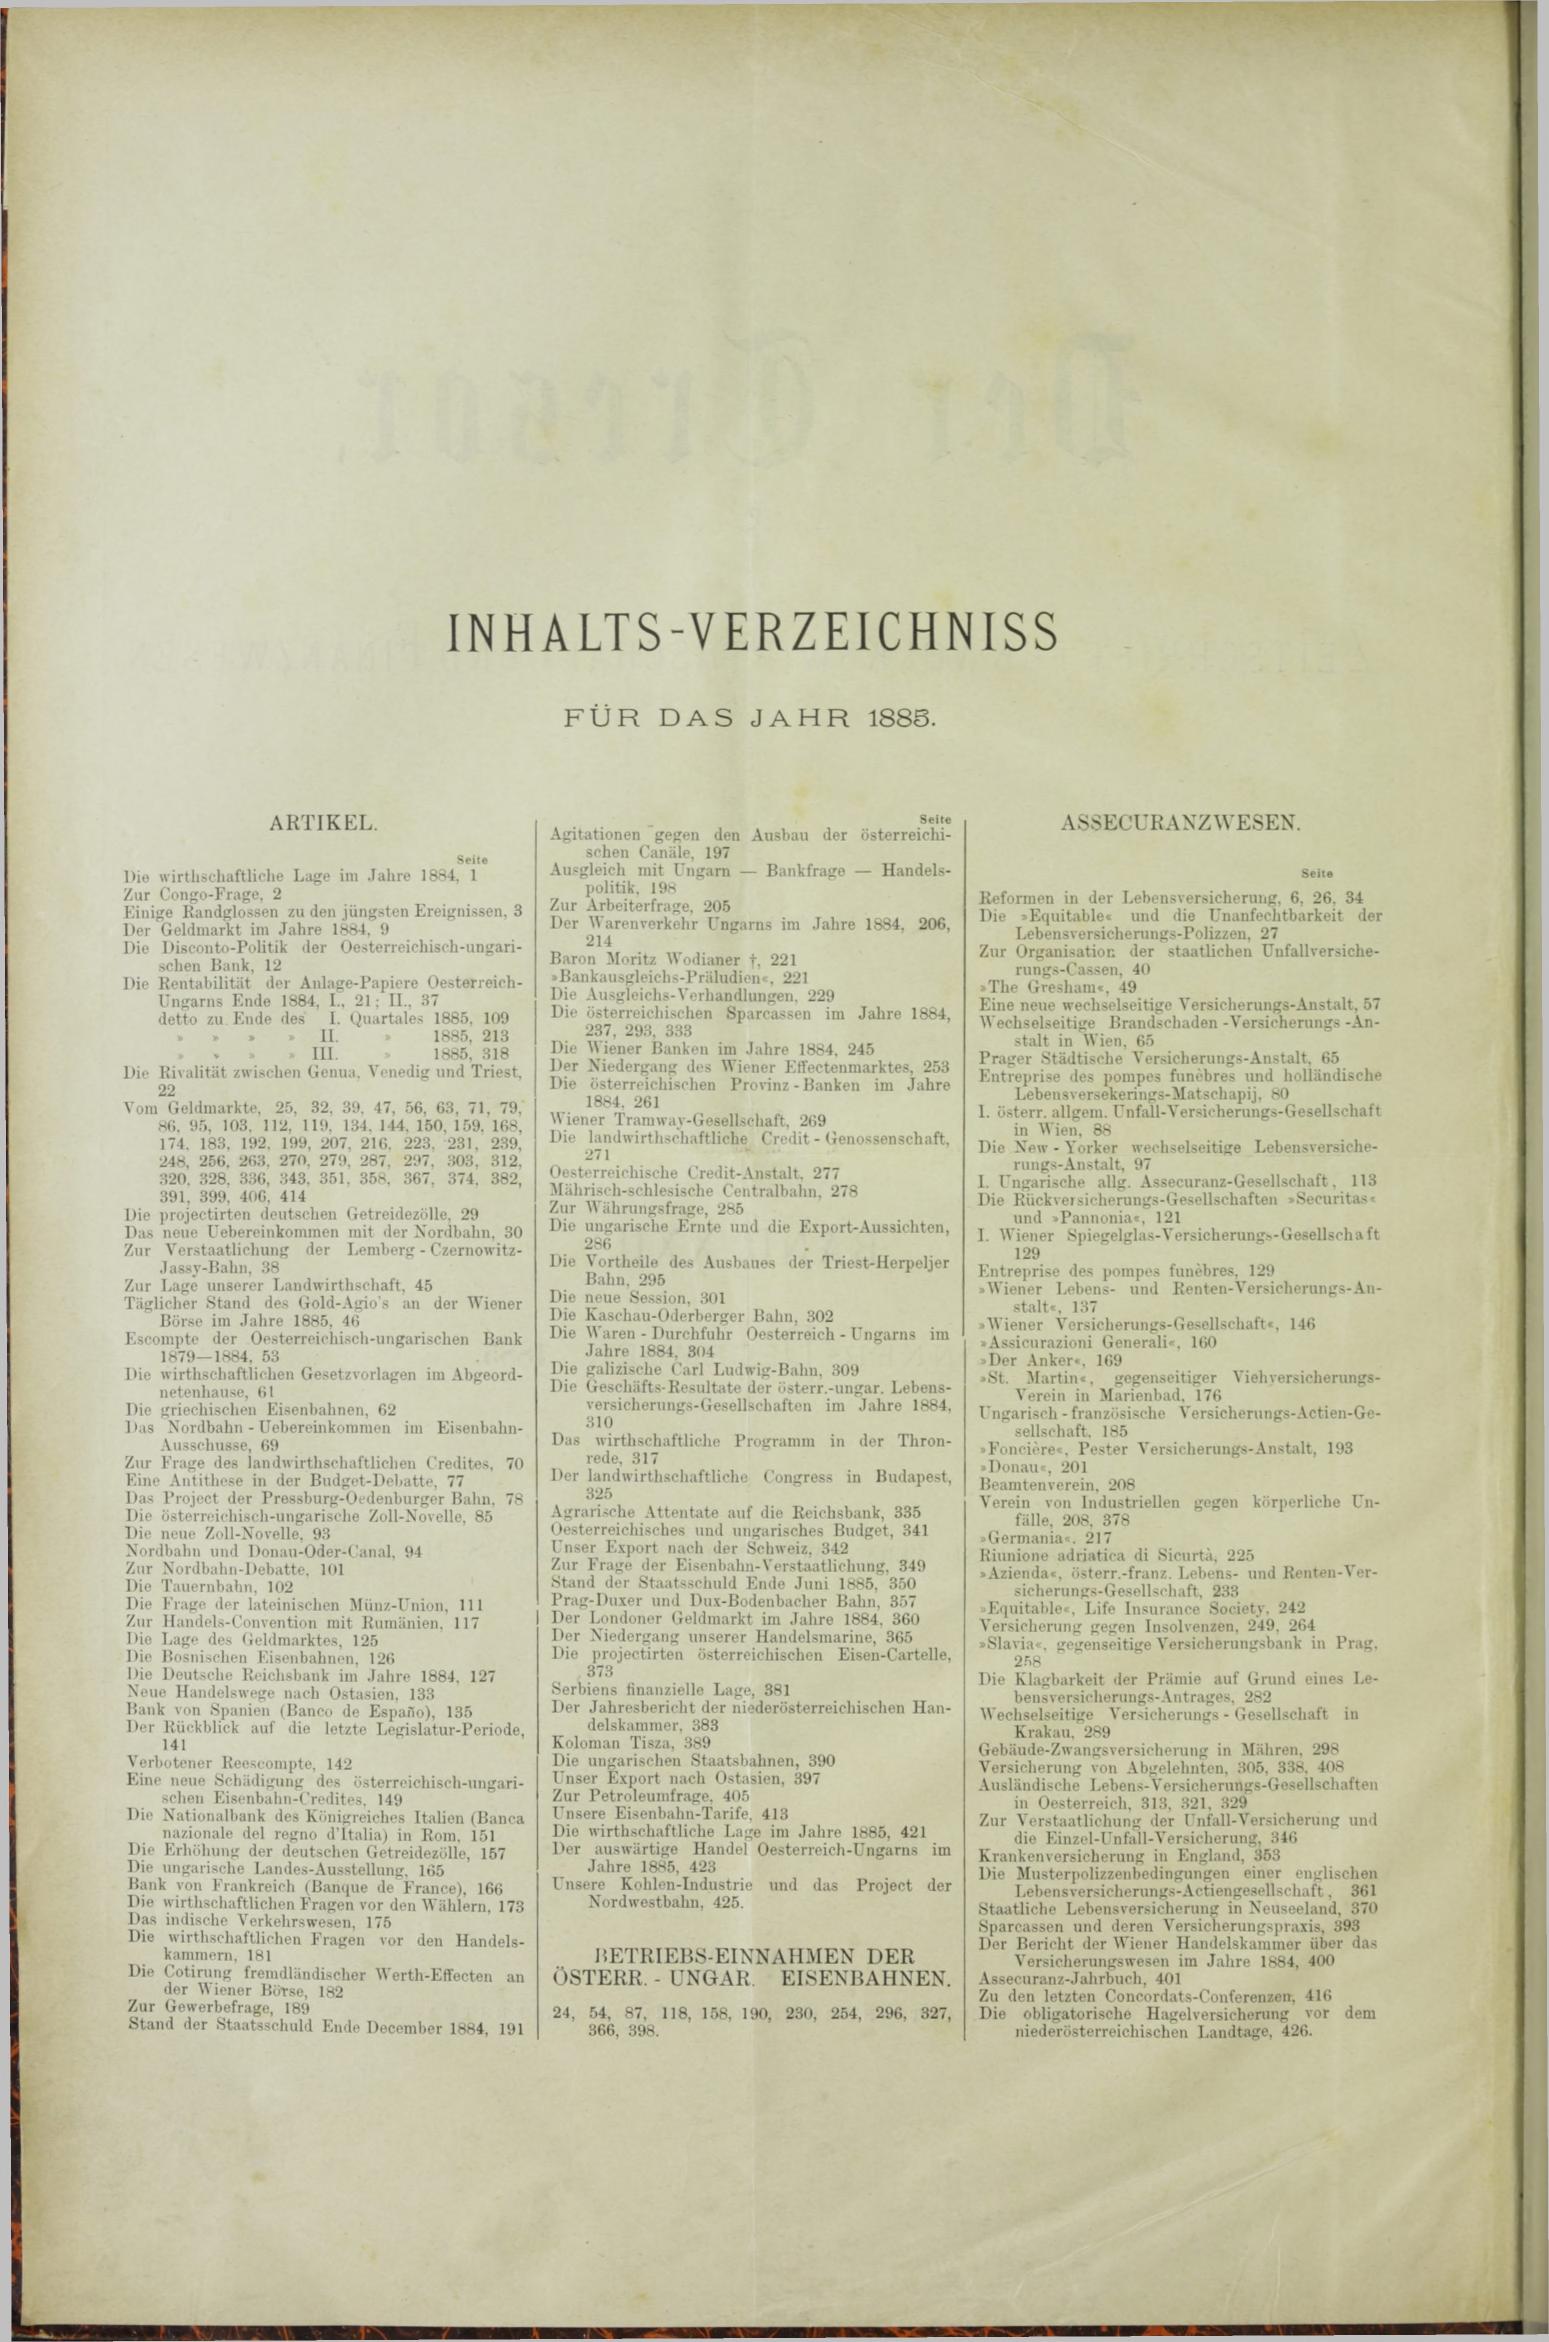 Der Tresor 01.10.1885 - Seite 8